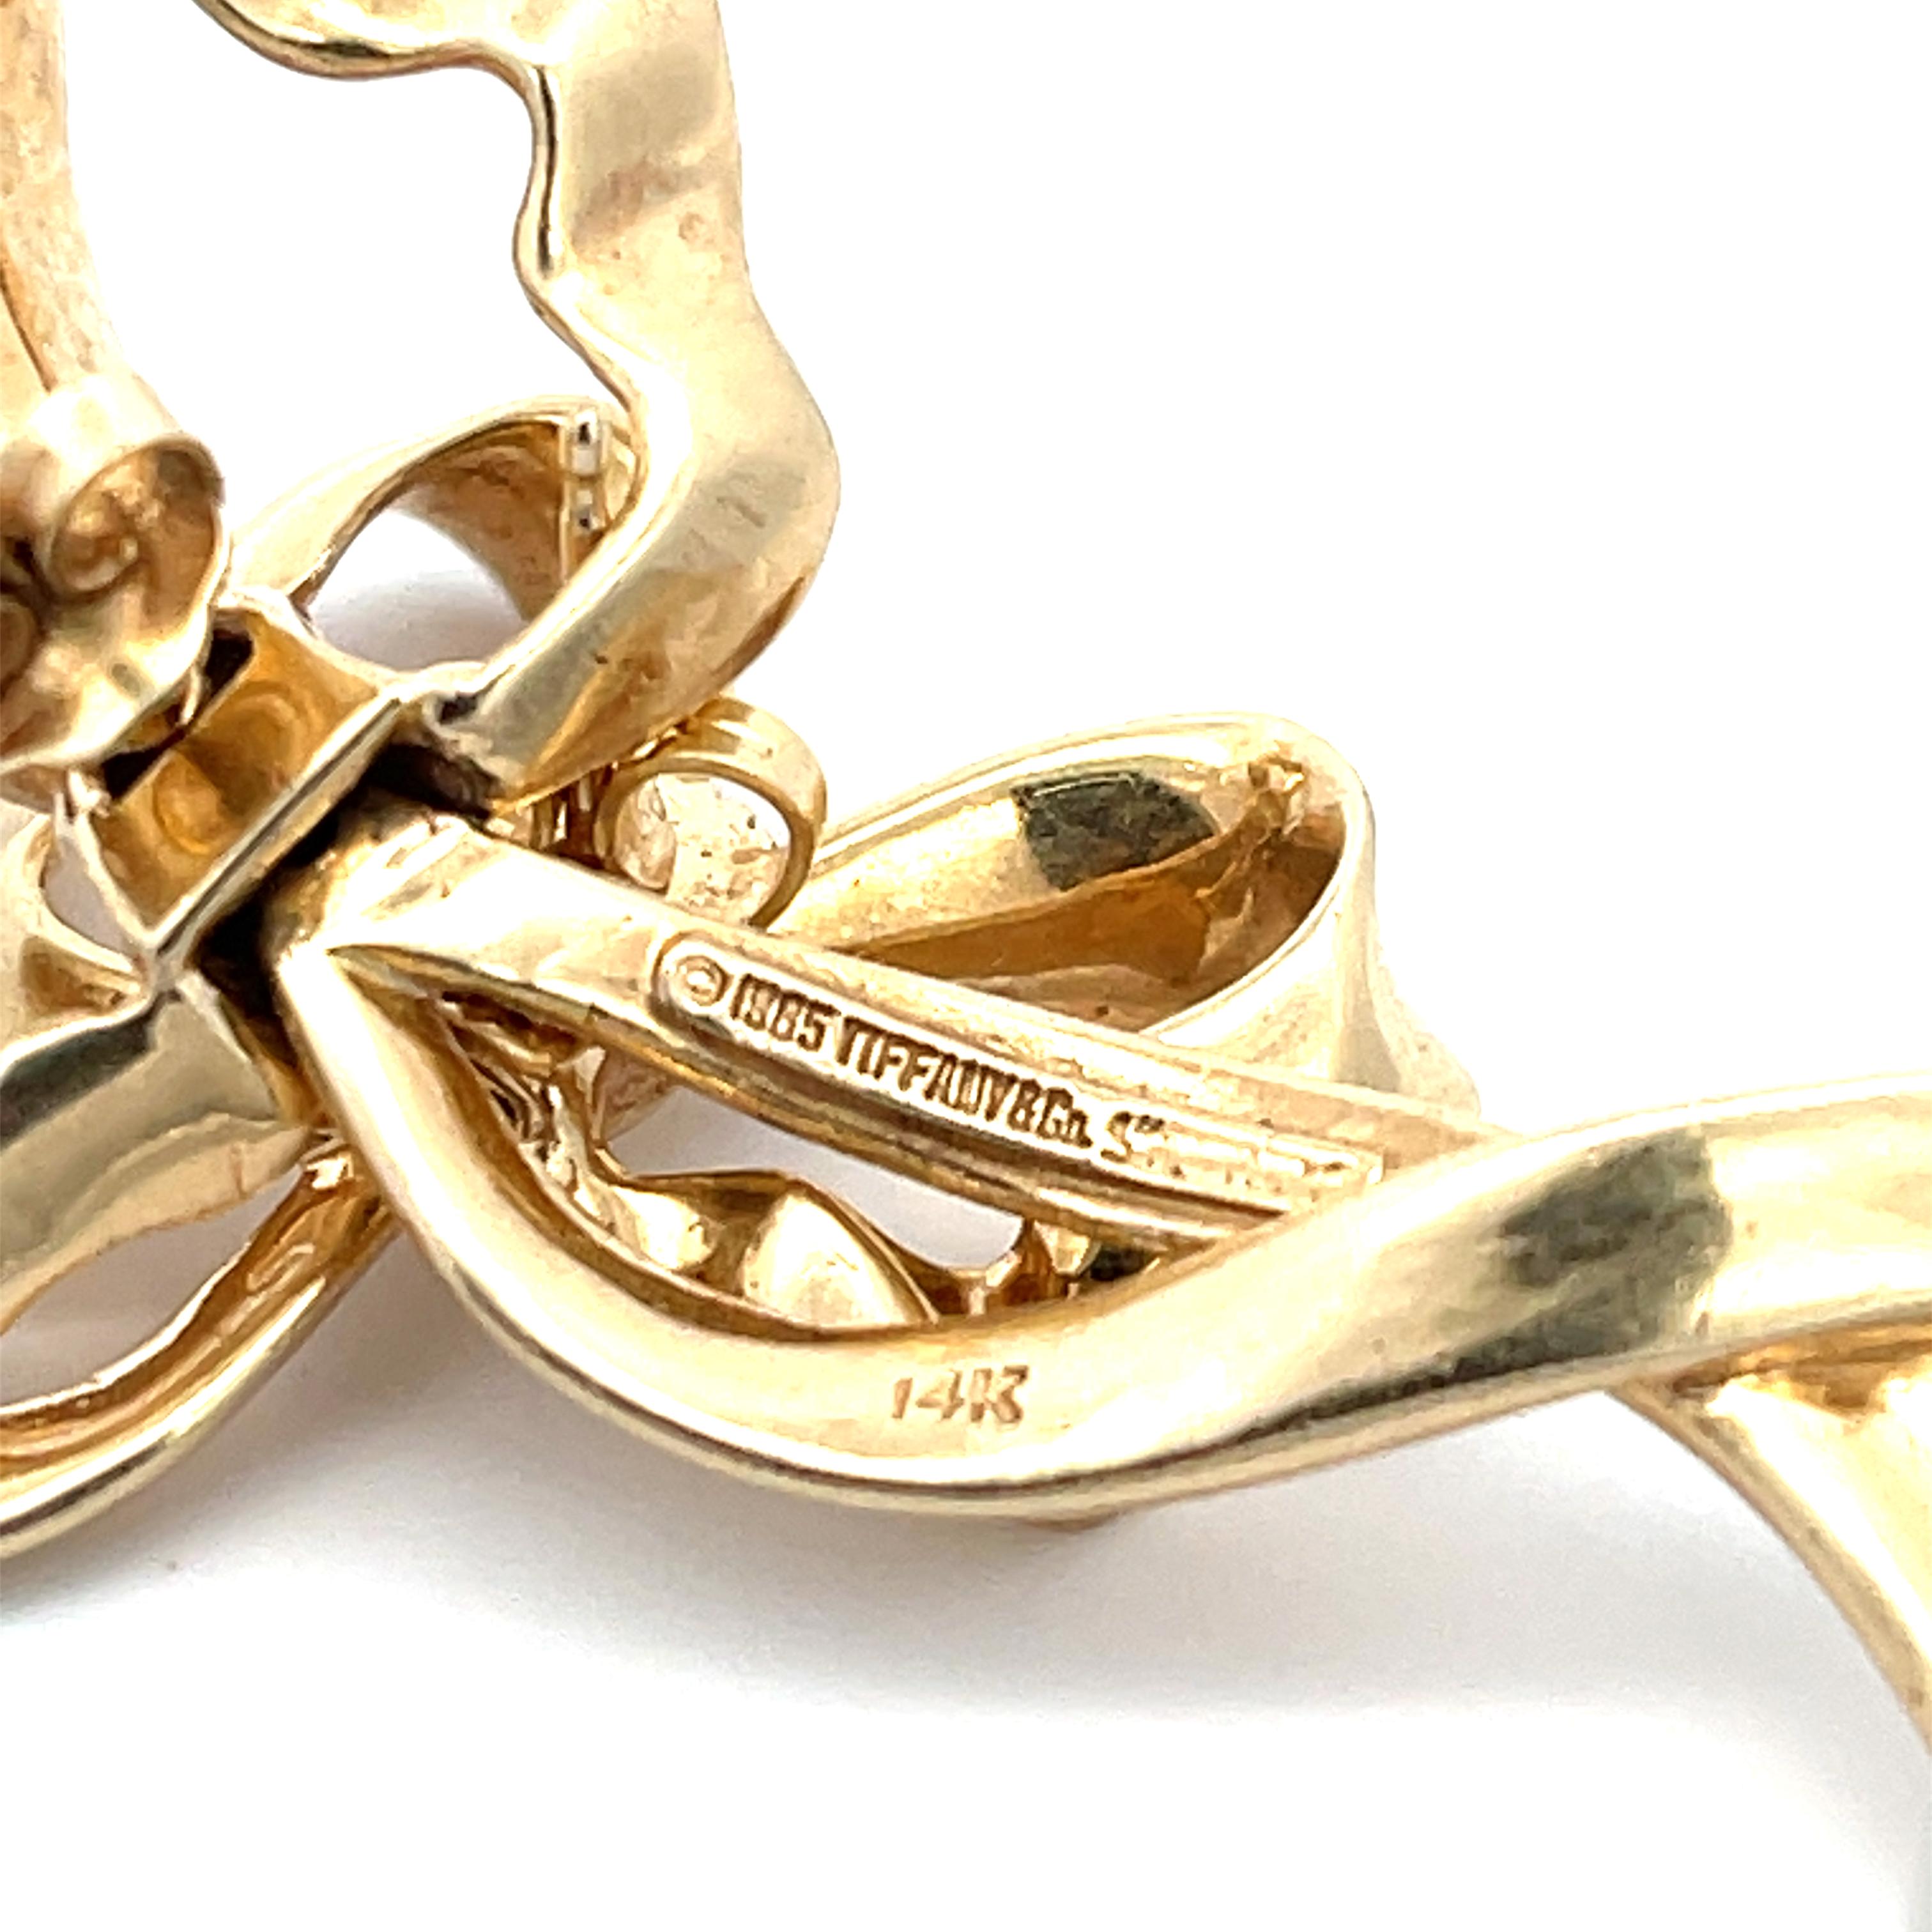 Tiffany & Co. Schleifen-Ohrringe aus 14K Gelbgold. Die Ohrringe sind 2,5